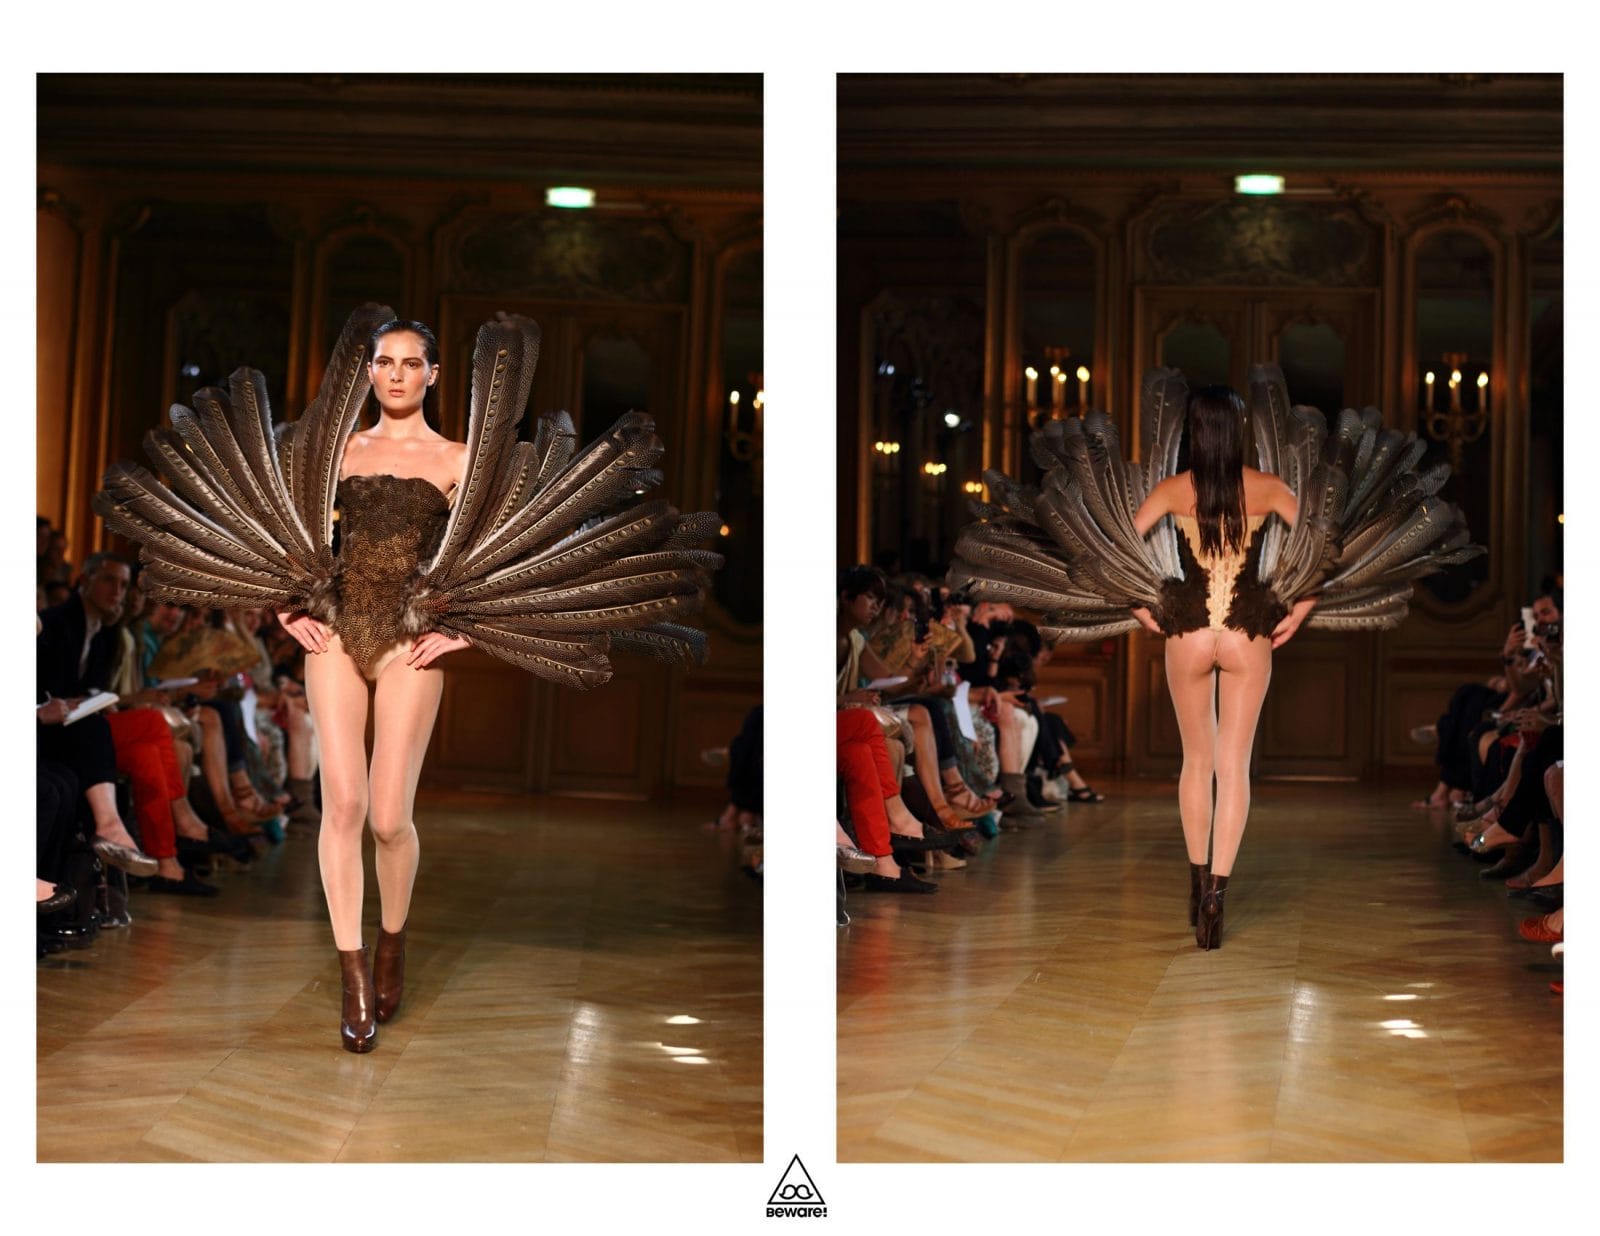 Défilé Haute Couture 2012/13 : Serkan Cura 23